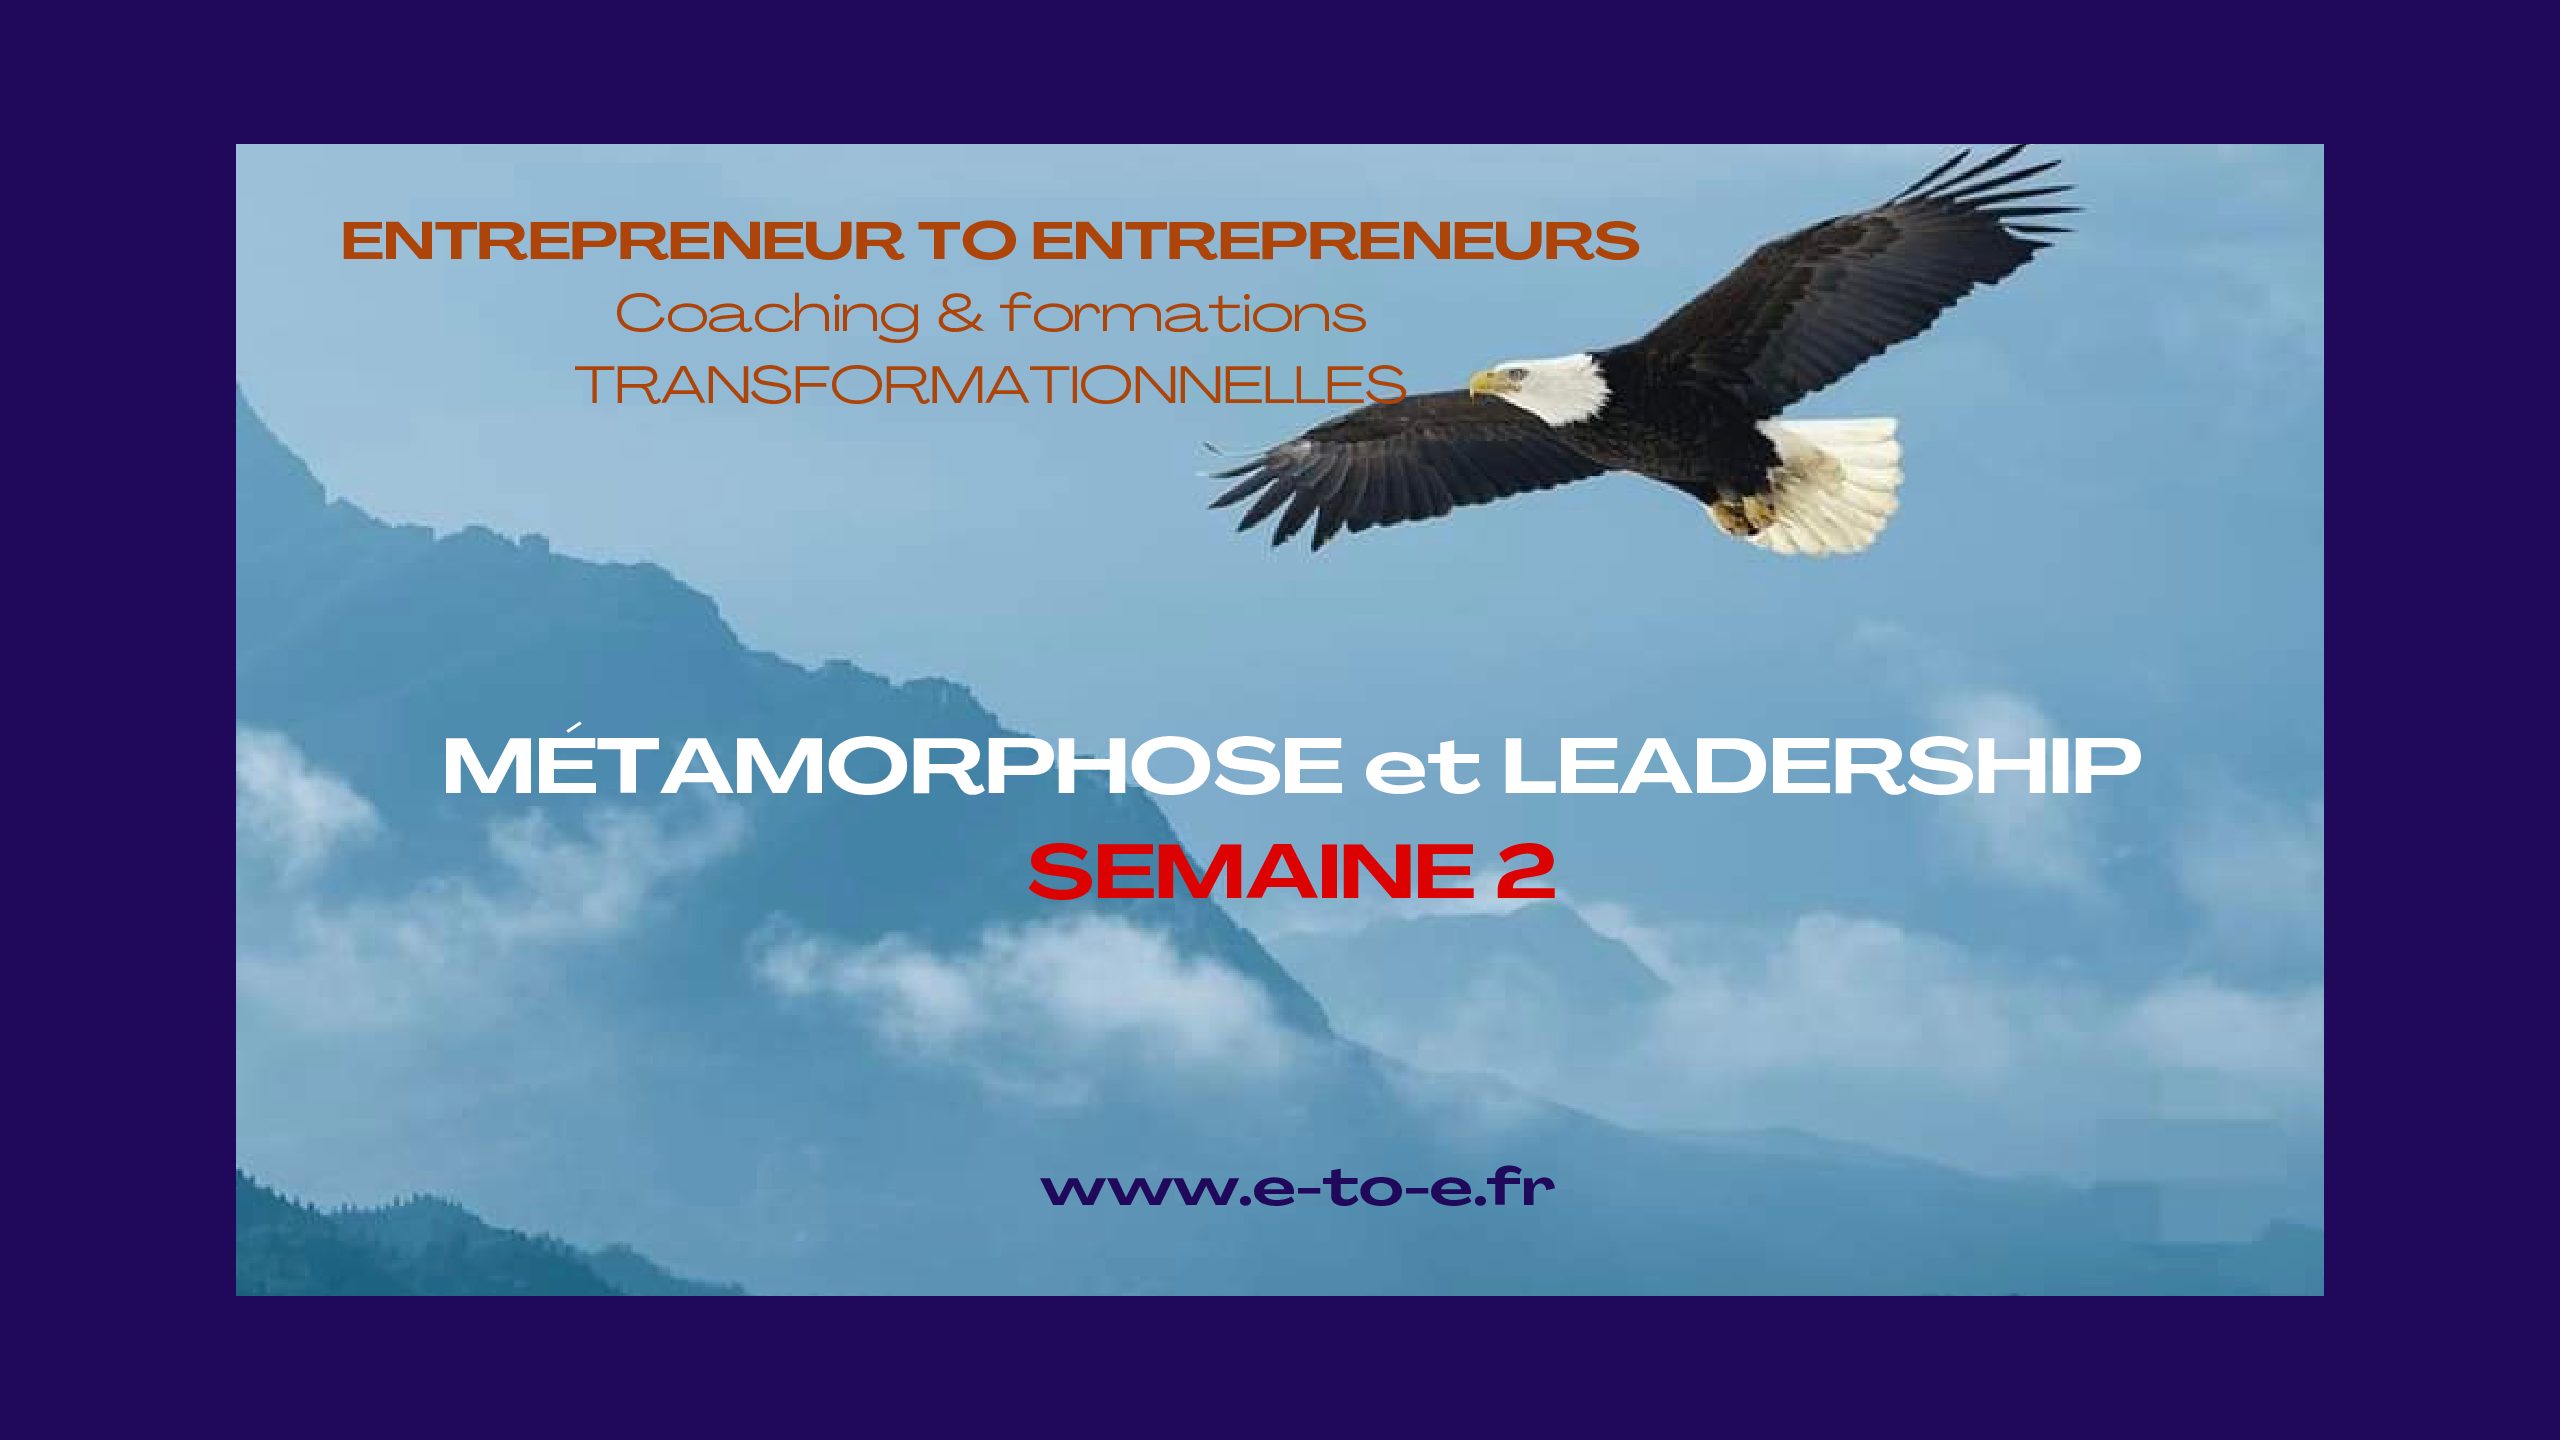 MÉTAMORPHOSE & LEADERSHIP SEMAINE 2